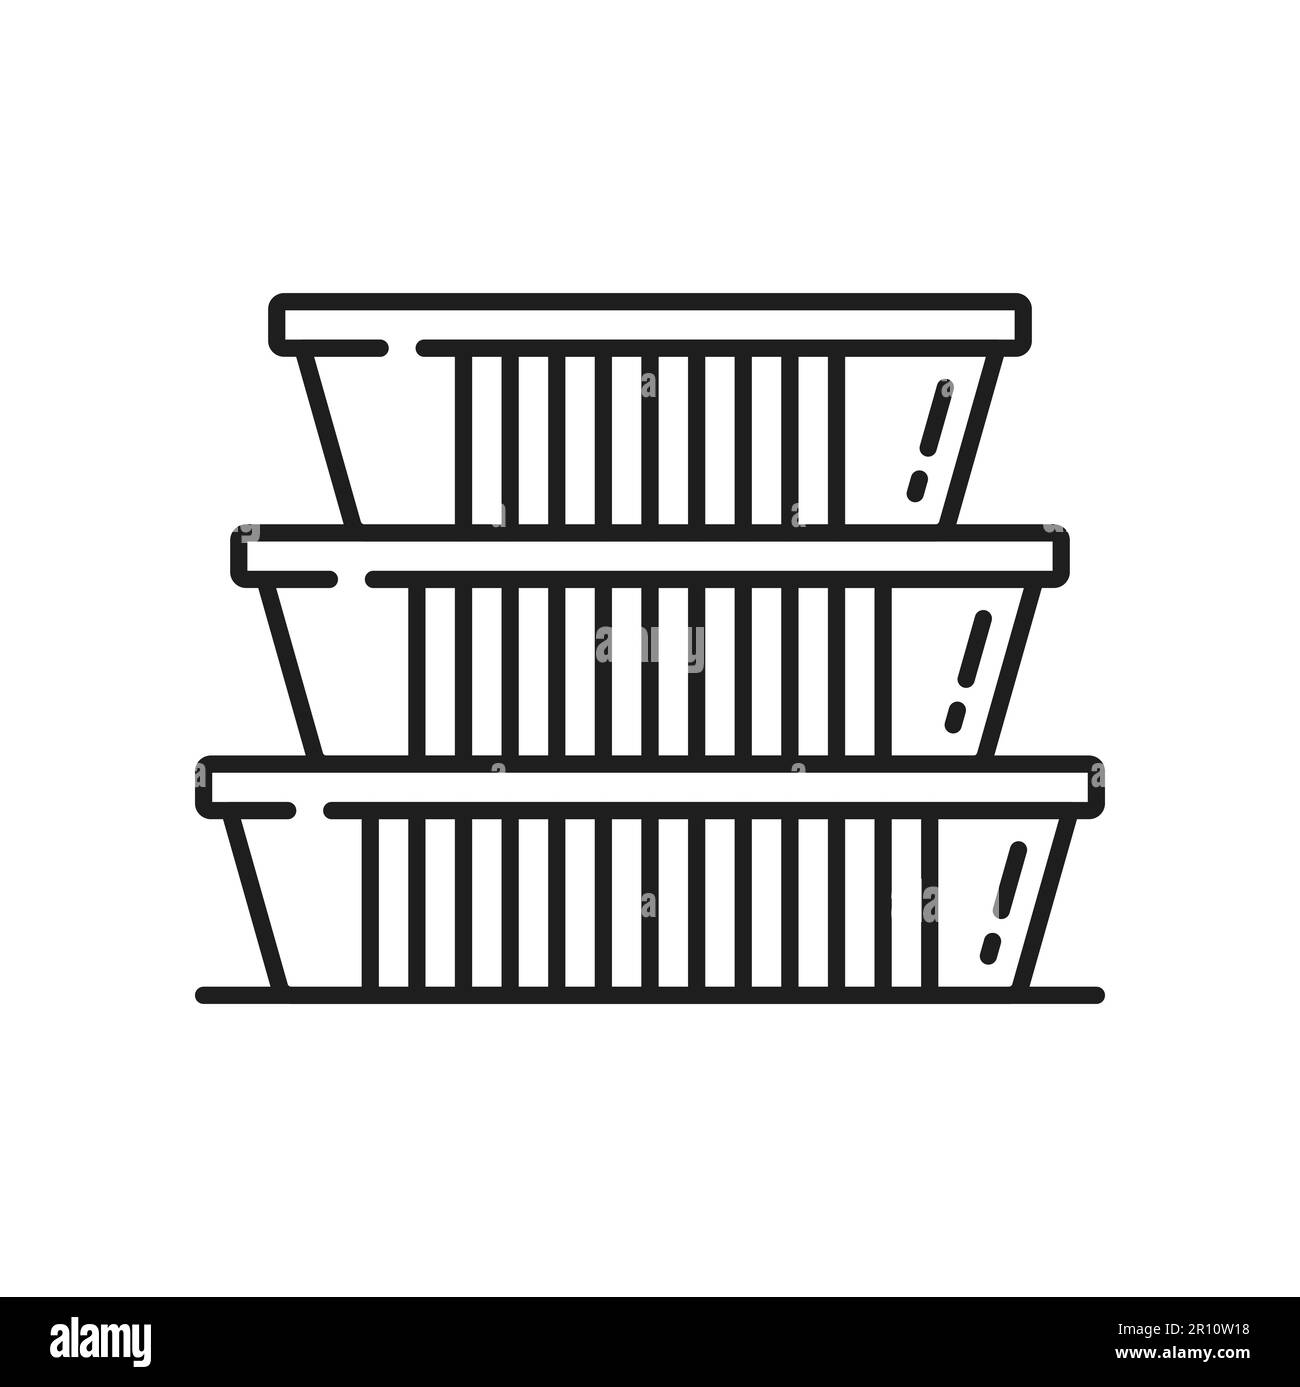 Contenitori in Plastica Per Alimenti in Cucina Fotografia Stock - Immagine  di benna, magazzino: 214420378